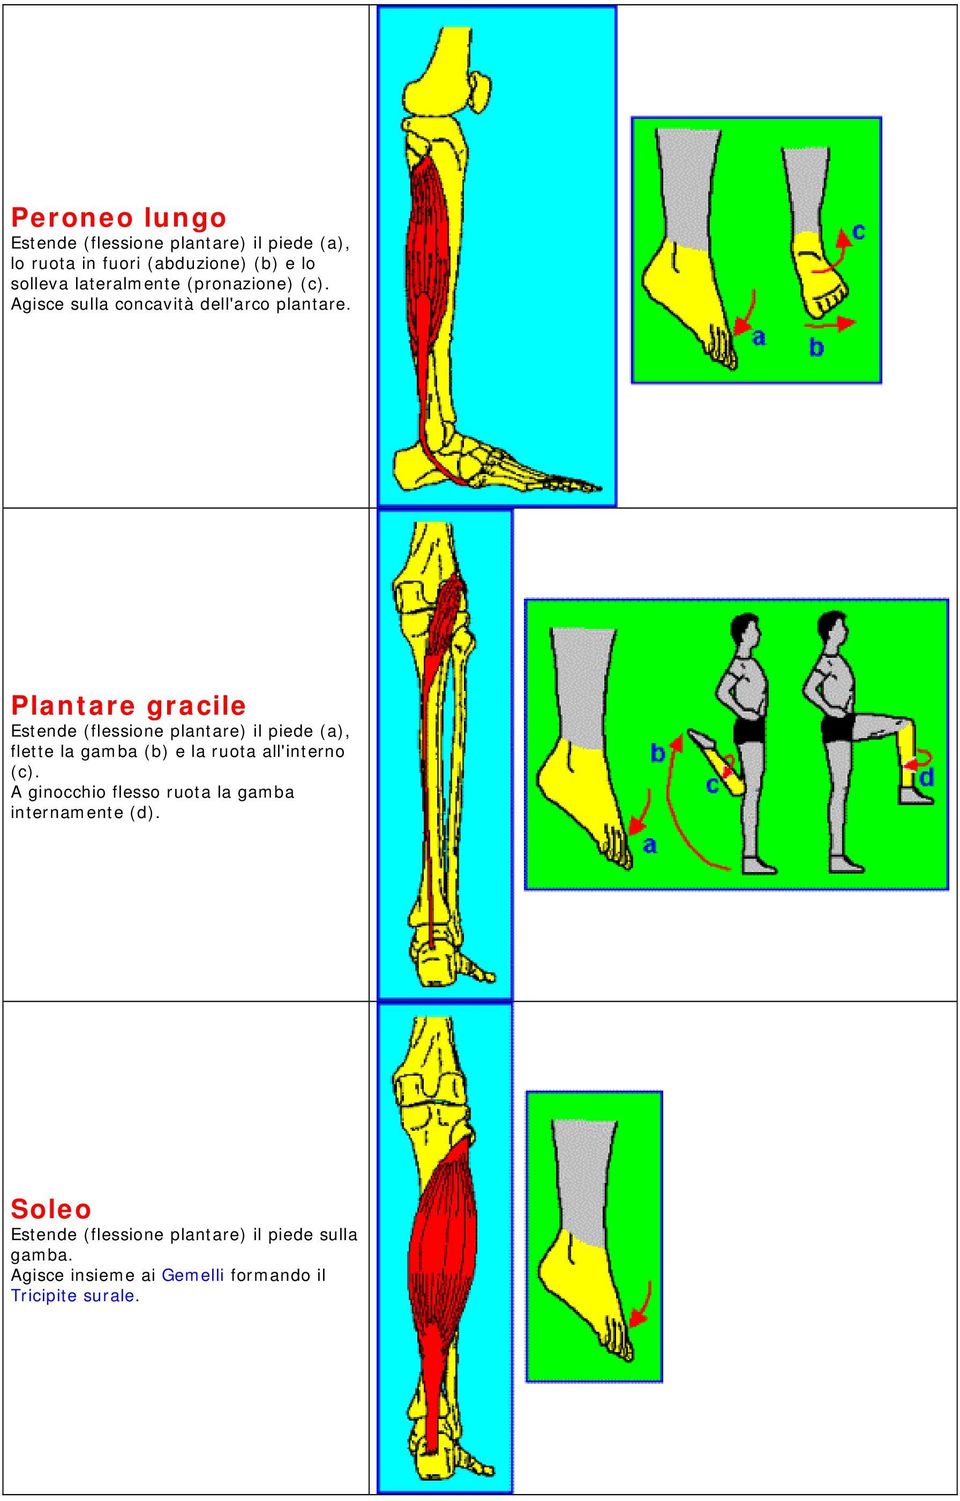 Plantare gracile Estende (flessione plantare) il piede (a), flette la gamba (b) e la ruota all'interno (c).